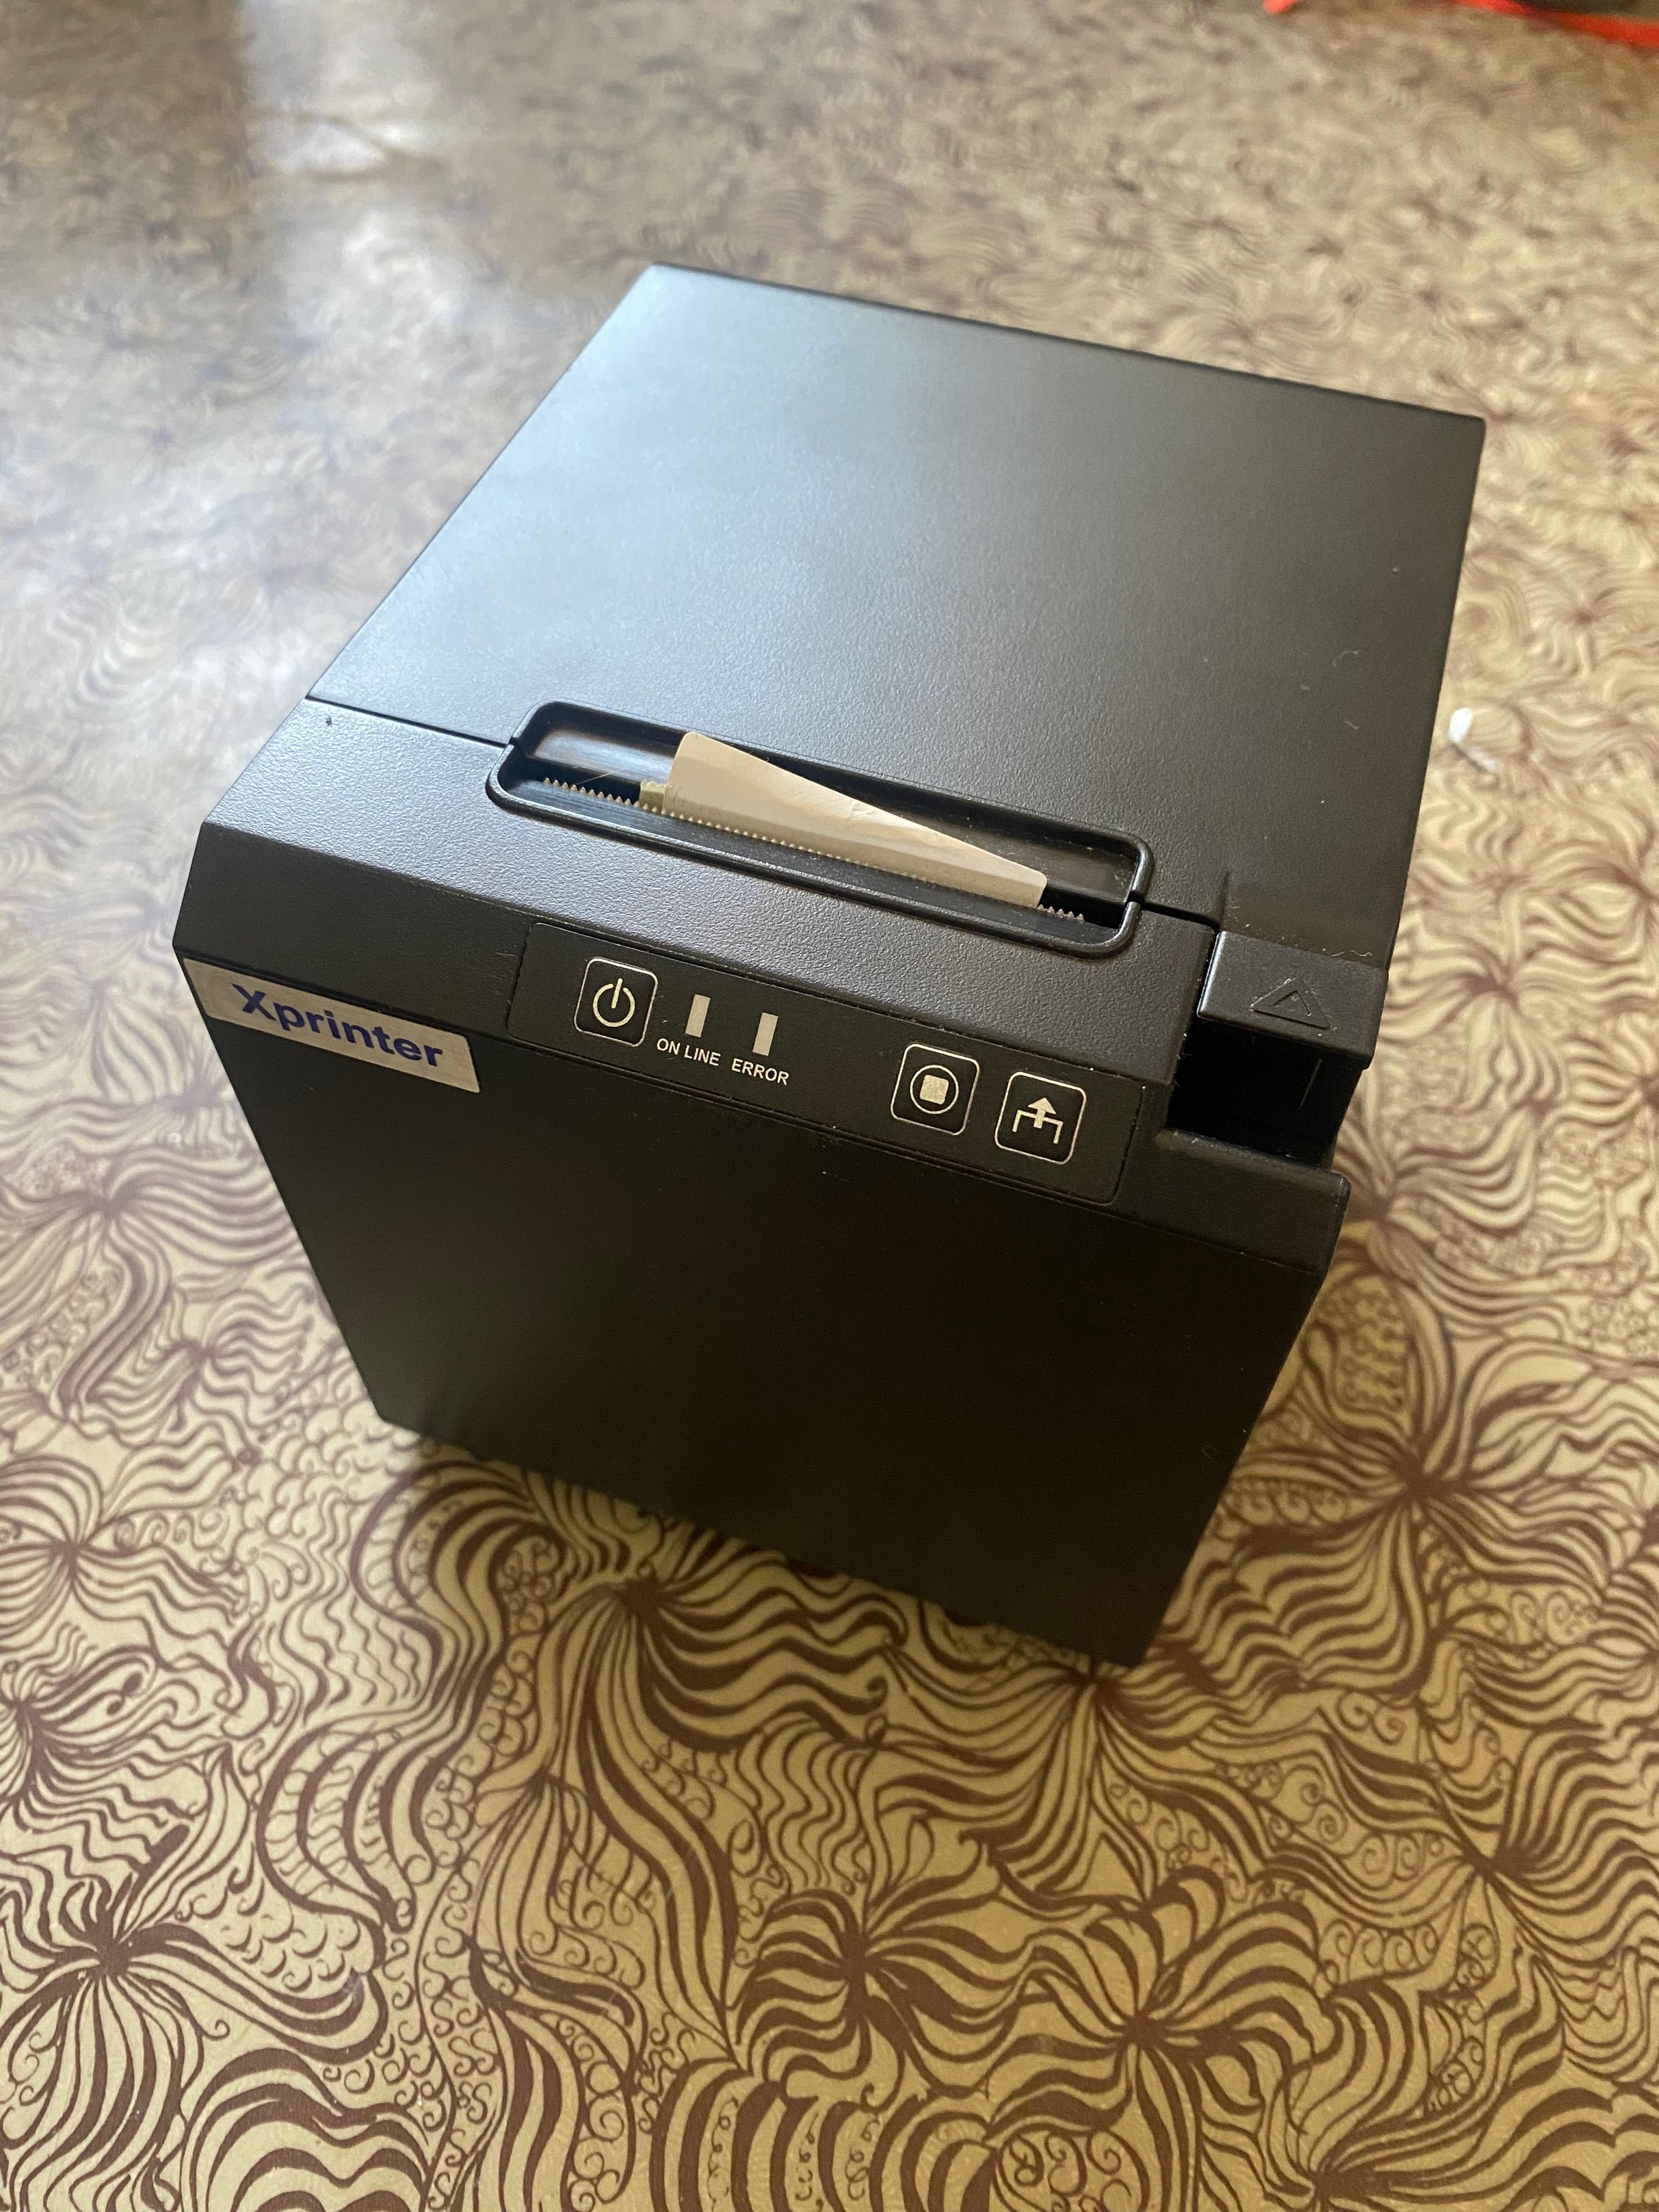 Xprinter mini для печати стикеров или чеков